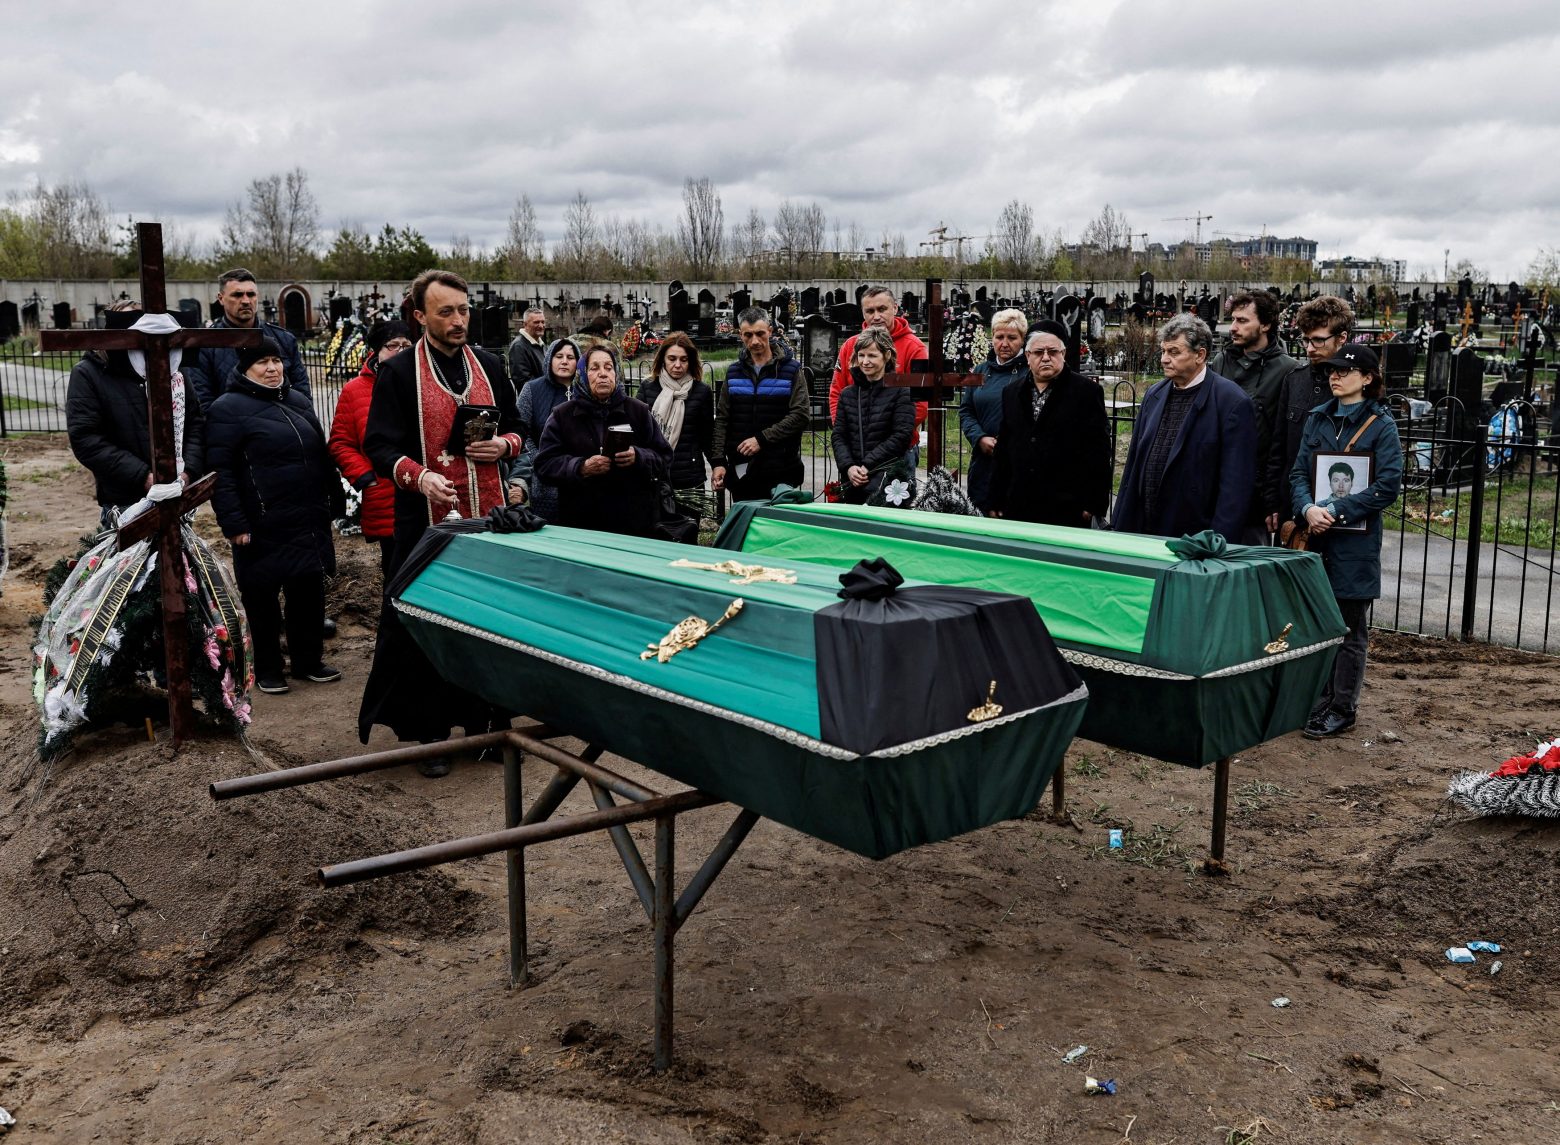 Ουκρανία: Άλλοι 48 στρατιώτες θα περάσουν από δίκες για εγκλήματα πολέμου